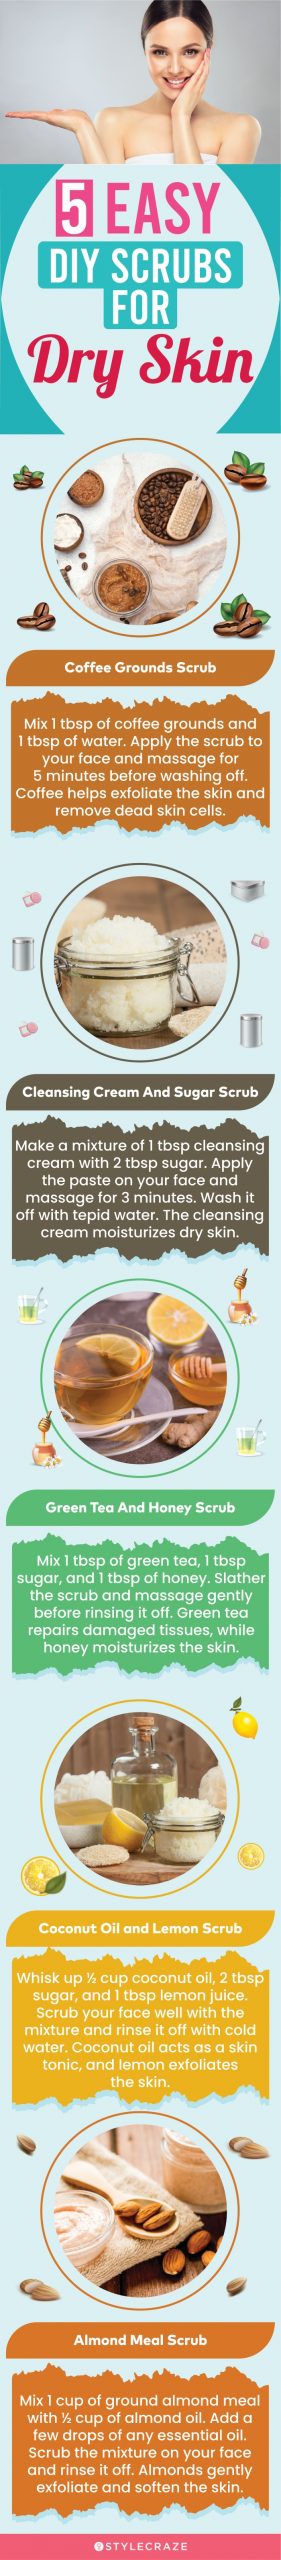 Homemade Facial Scrub: 8 DIY Recipes for Healthier Skin